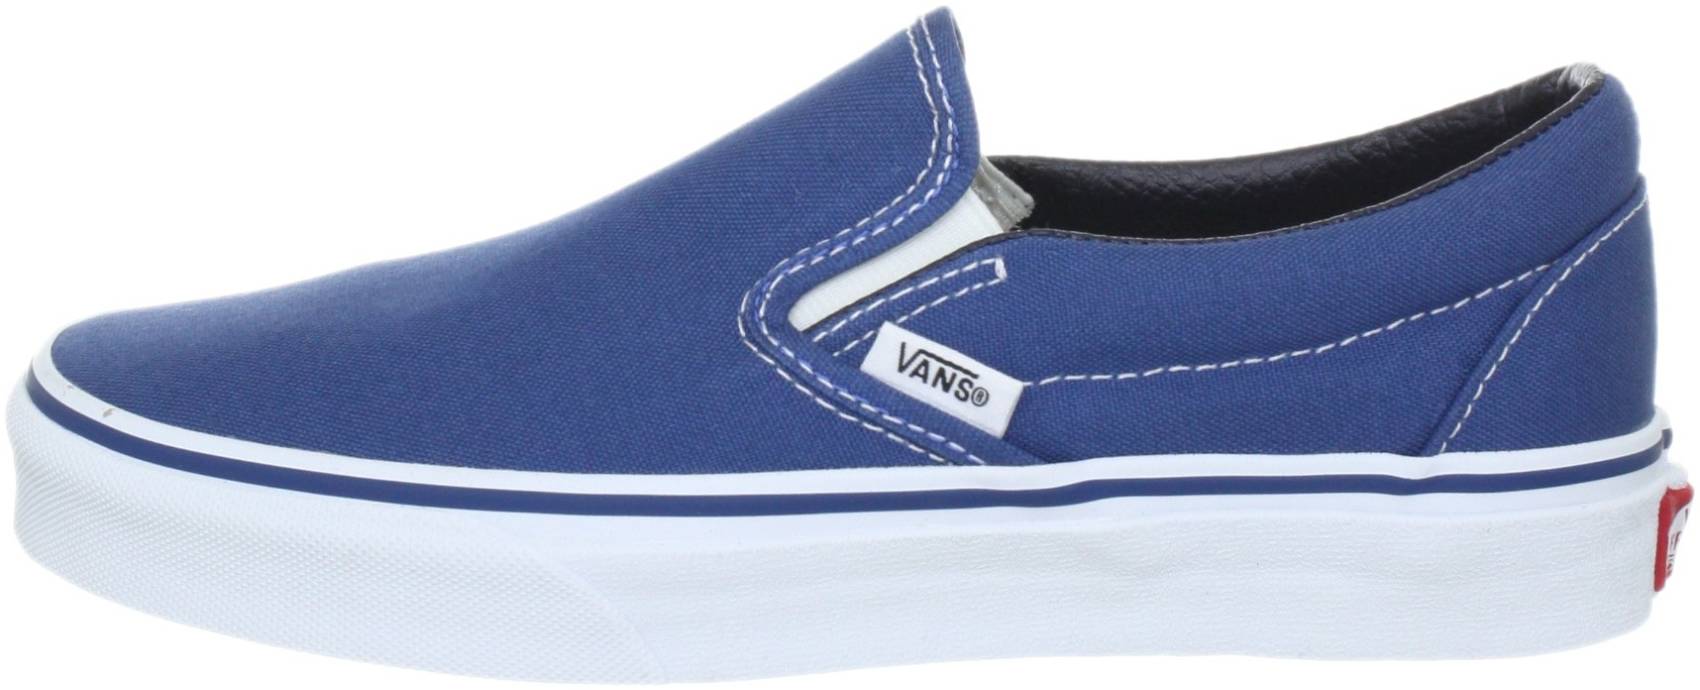 vans classic navy blue sneakers